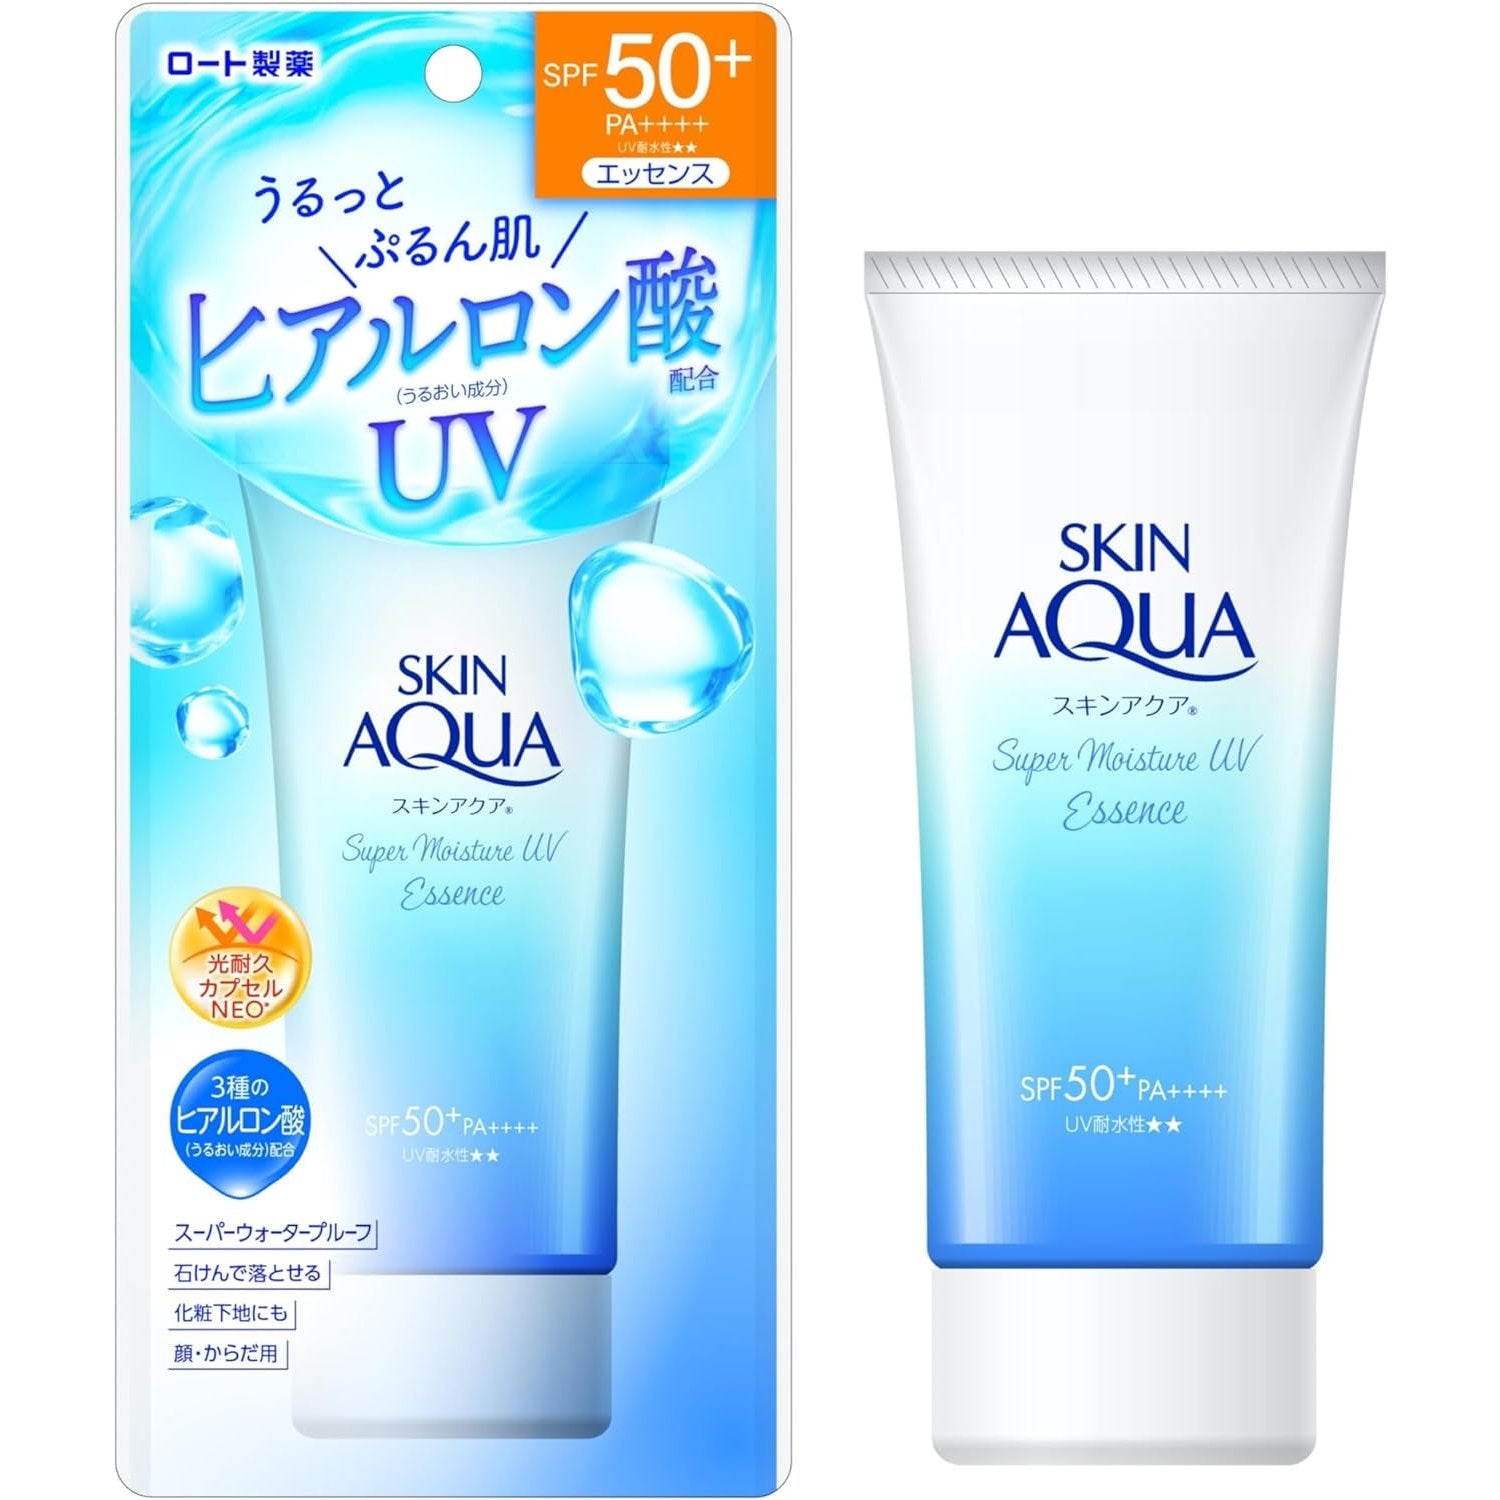 Rohto-Skin-Aqua-Sunscreen-Super-Moisture-UV-Essence-SPF50+-80g-1-2024-03-18T07:55:10.565Z.jpg